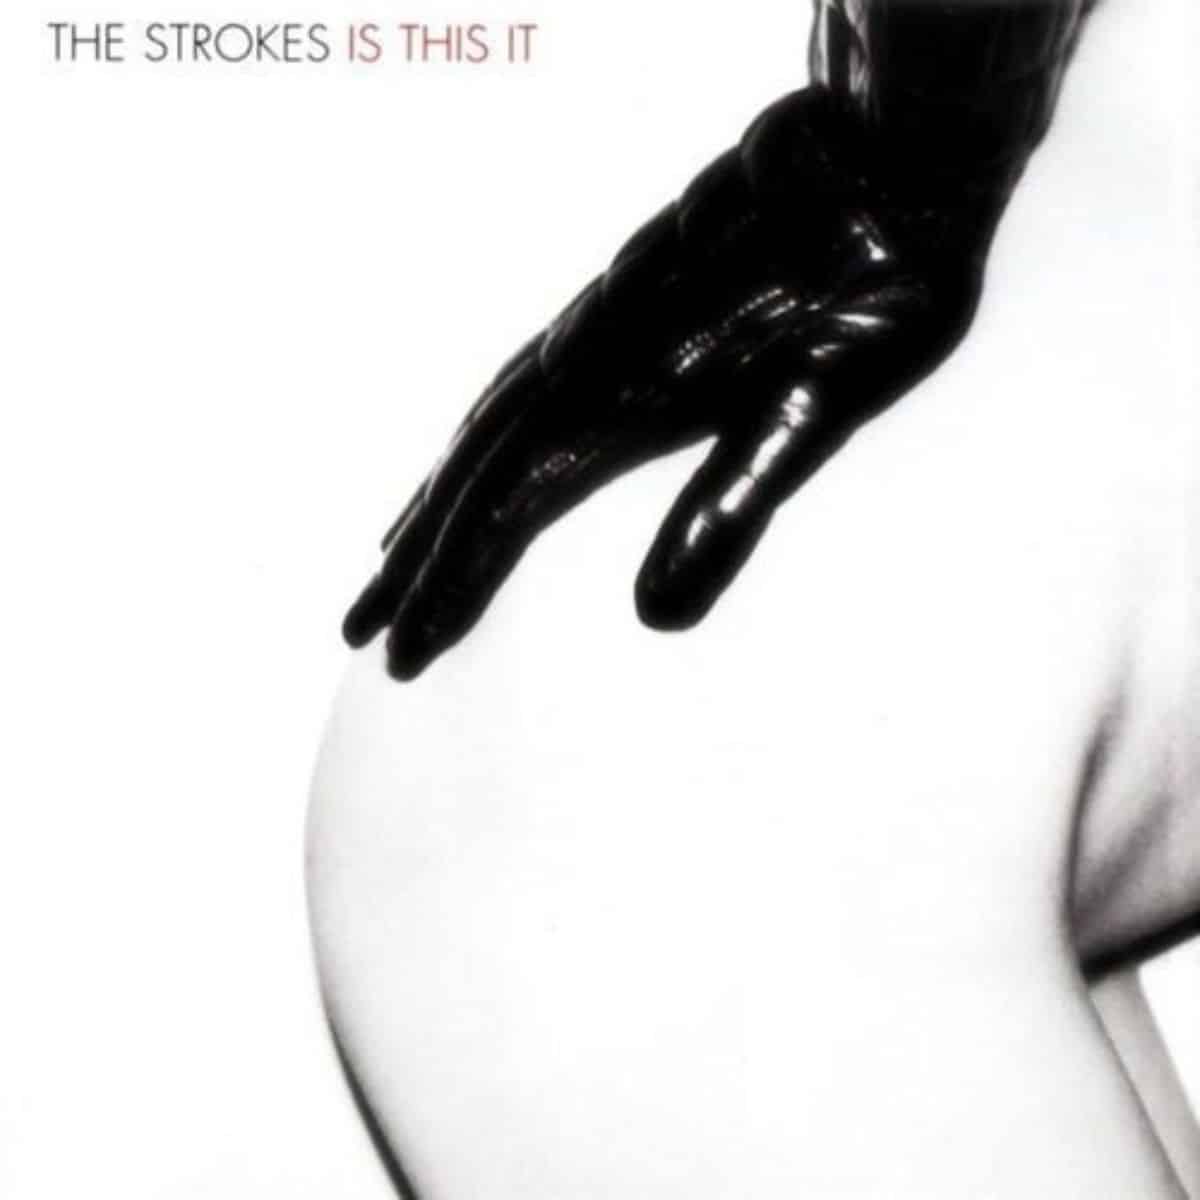 the strokes' album cover